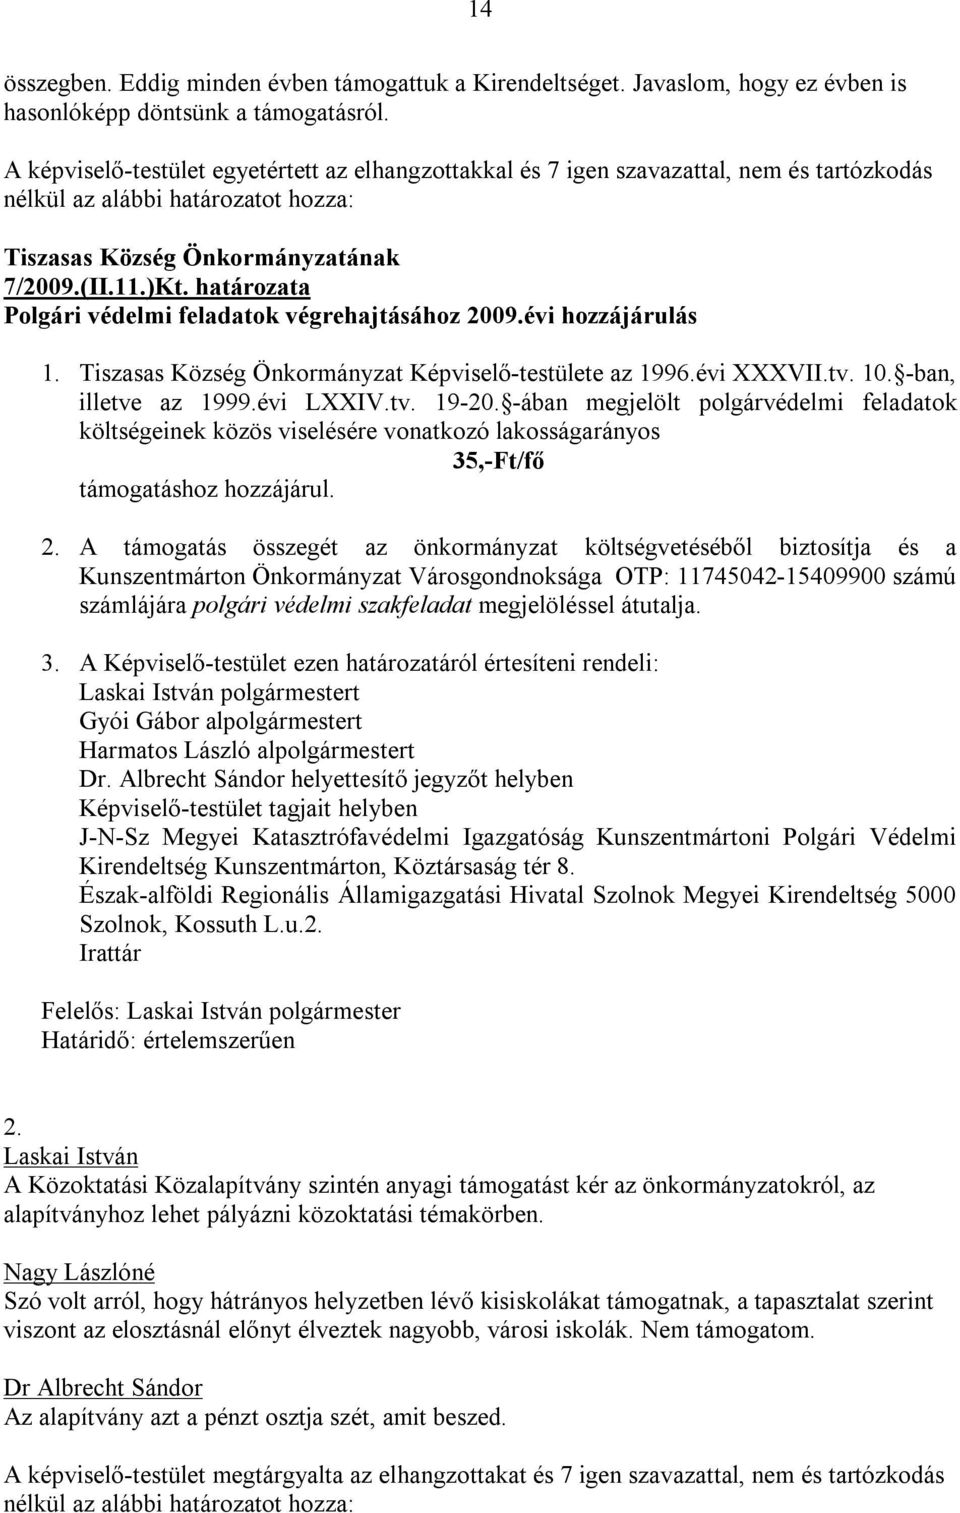 határozata Polgári védelmi feladatok végrehajtásához 2009.évi hozzájárulás 1. Tiszasas Község Önkormányzat Képviselő-testülete az 1996.évi XXXVII.tv. 10. -ban, illetve az 1999.évi LXXIV.tv. 19-20.